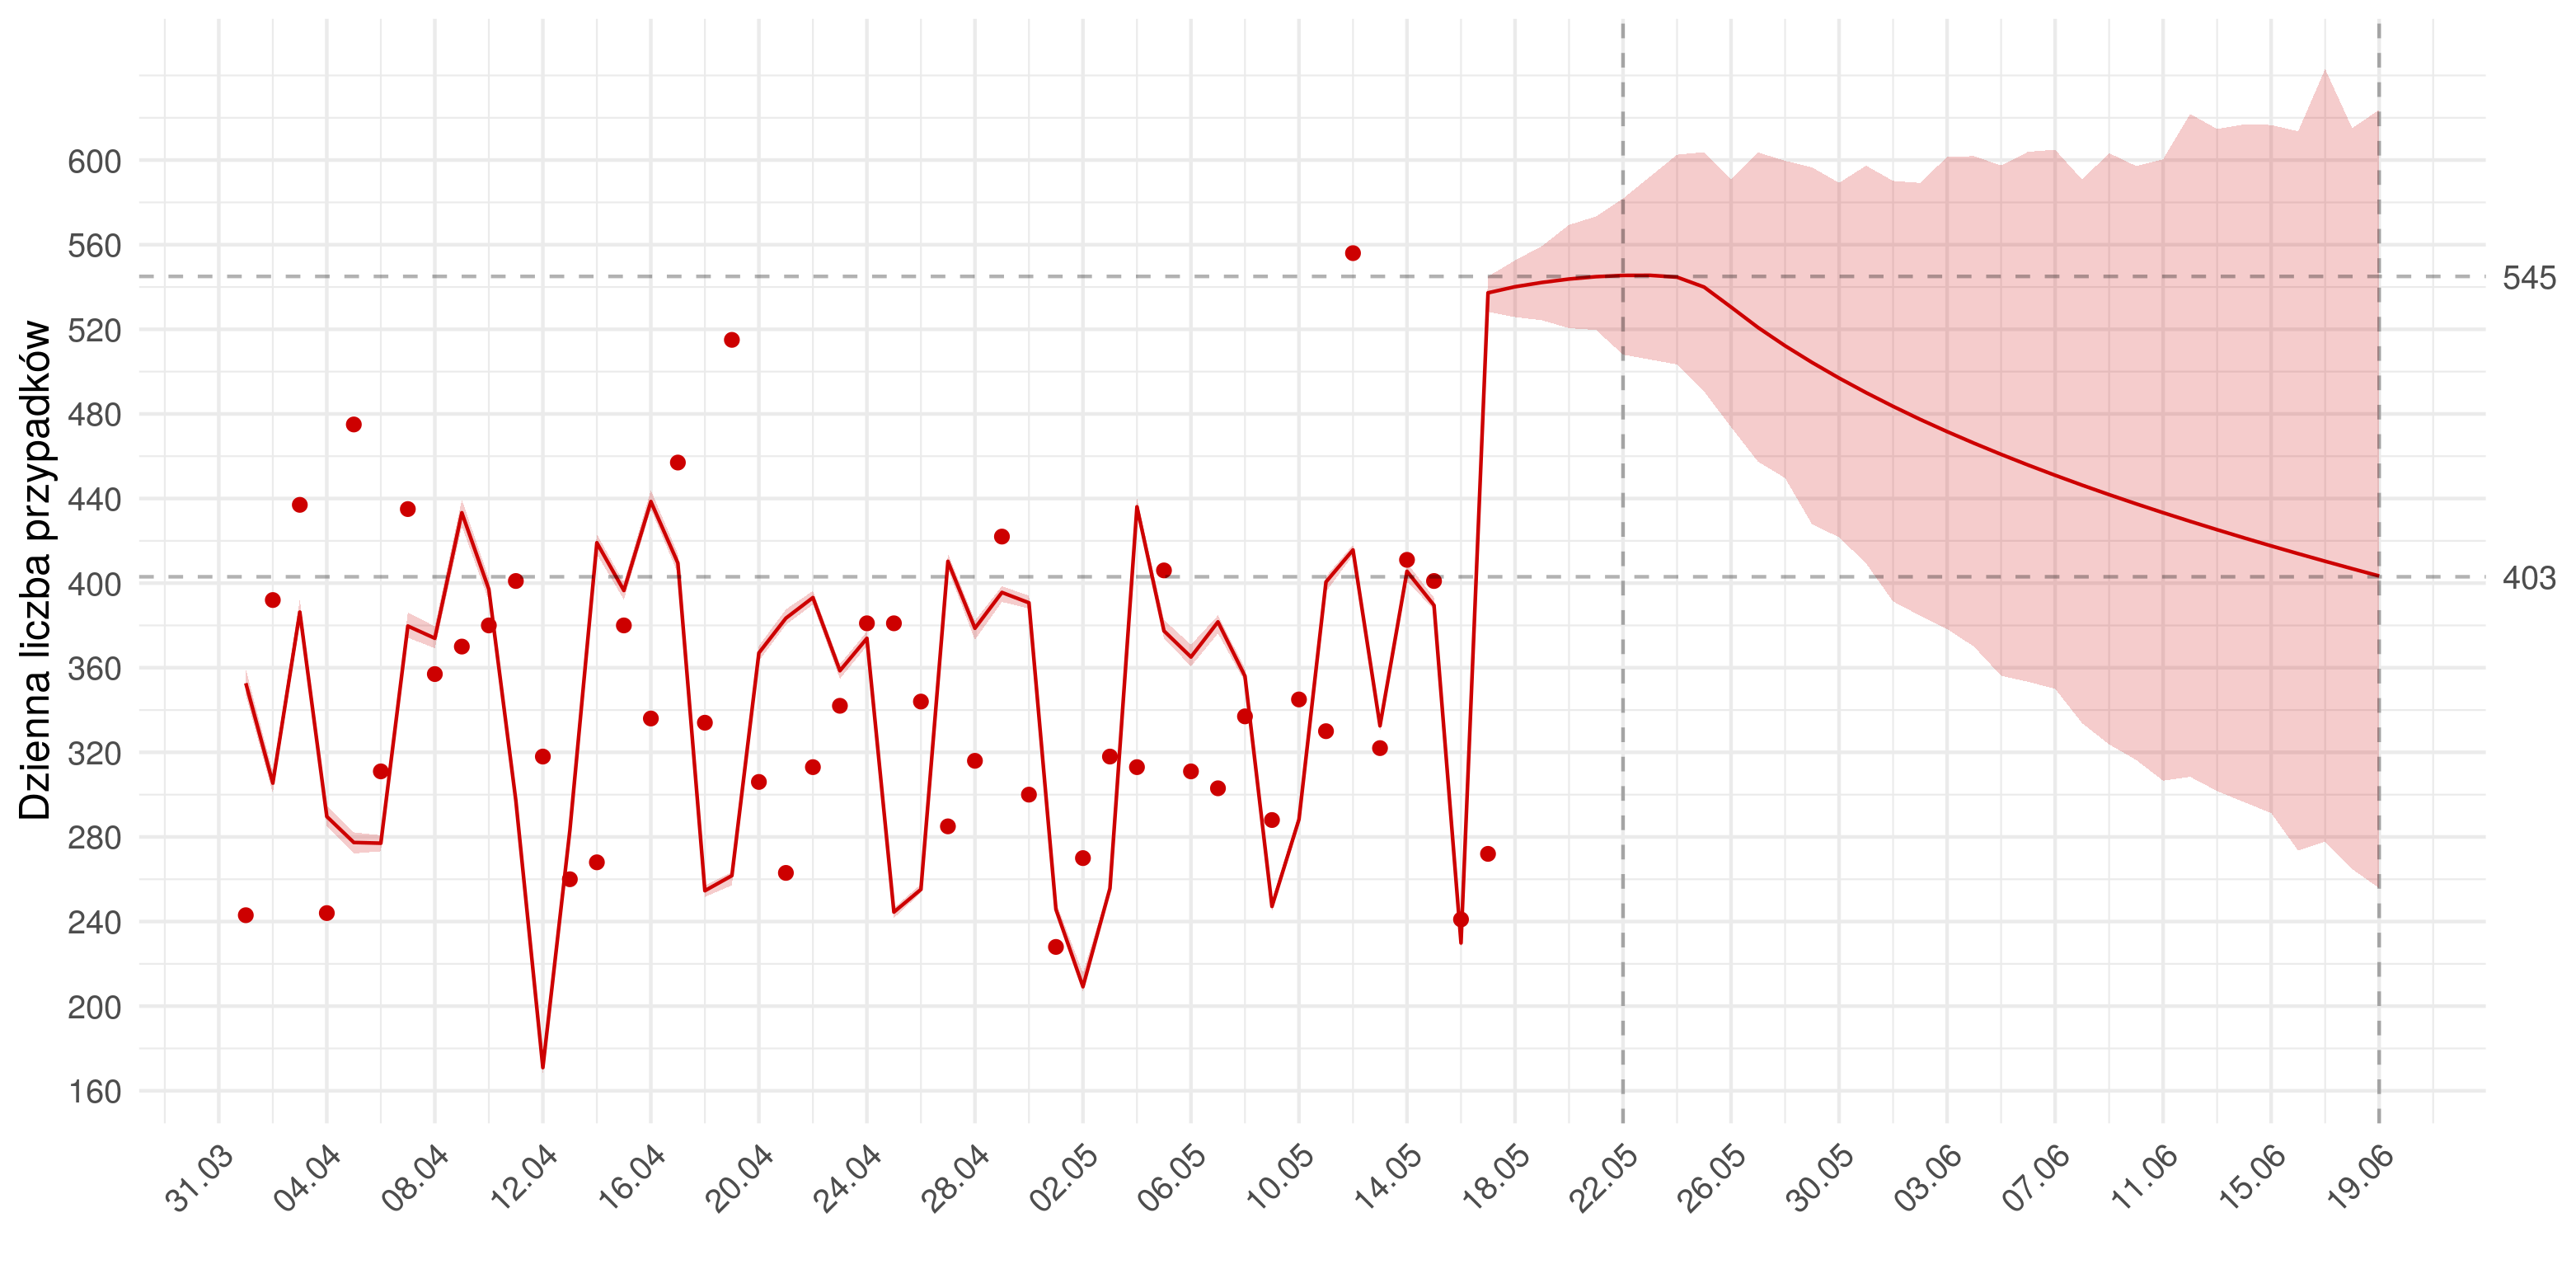 Średnioterminowa prognoza dziennej liczby rozpoznań zdiagnozowanych (czerwona linia) w modelu stochastycznym. Czerwonymi kropkami oznaczono obserwowane dane. Czerwona linia pokazuje predykcję z modelu - do 17.05 jest to predykcja w oparciu o obserwowane liczby wykonanych testów, następnie przyjęto trend wzrostowy w liczbie wykonywanych badań, co skutkuje prognozowanym spadkiem liczby zakażeń.